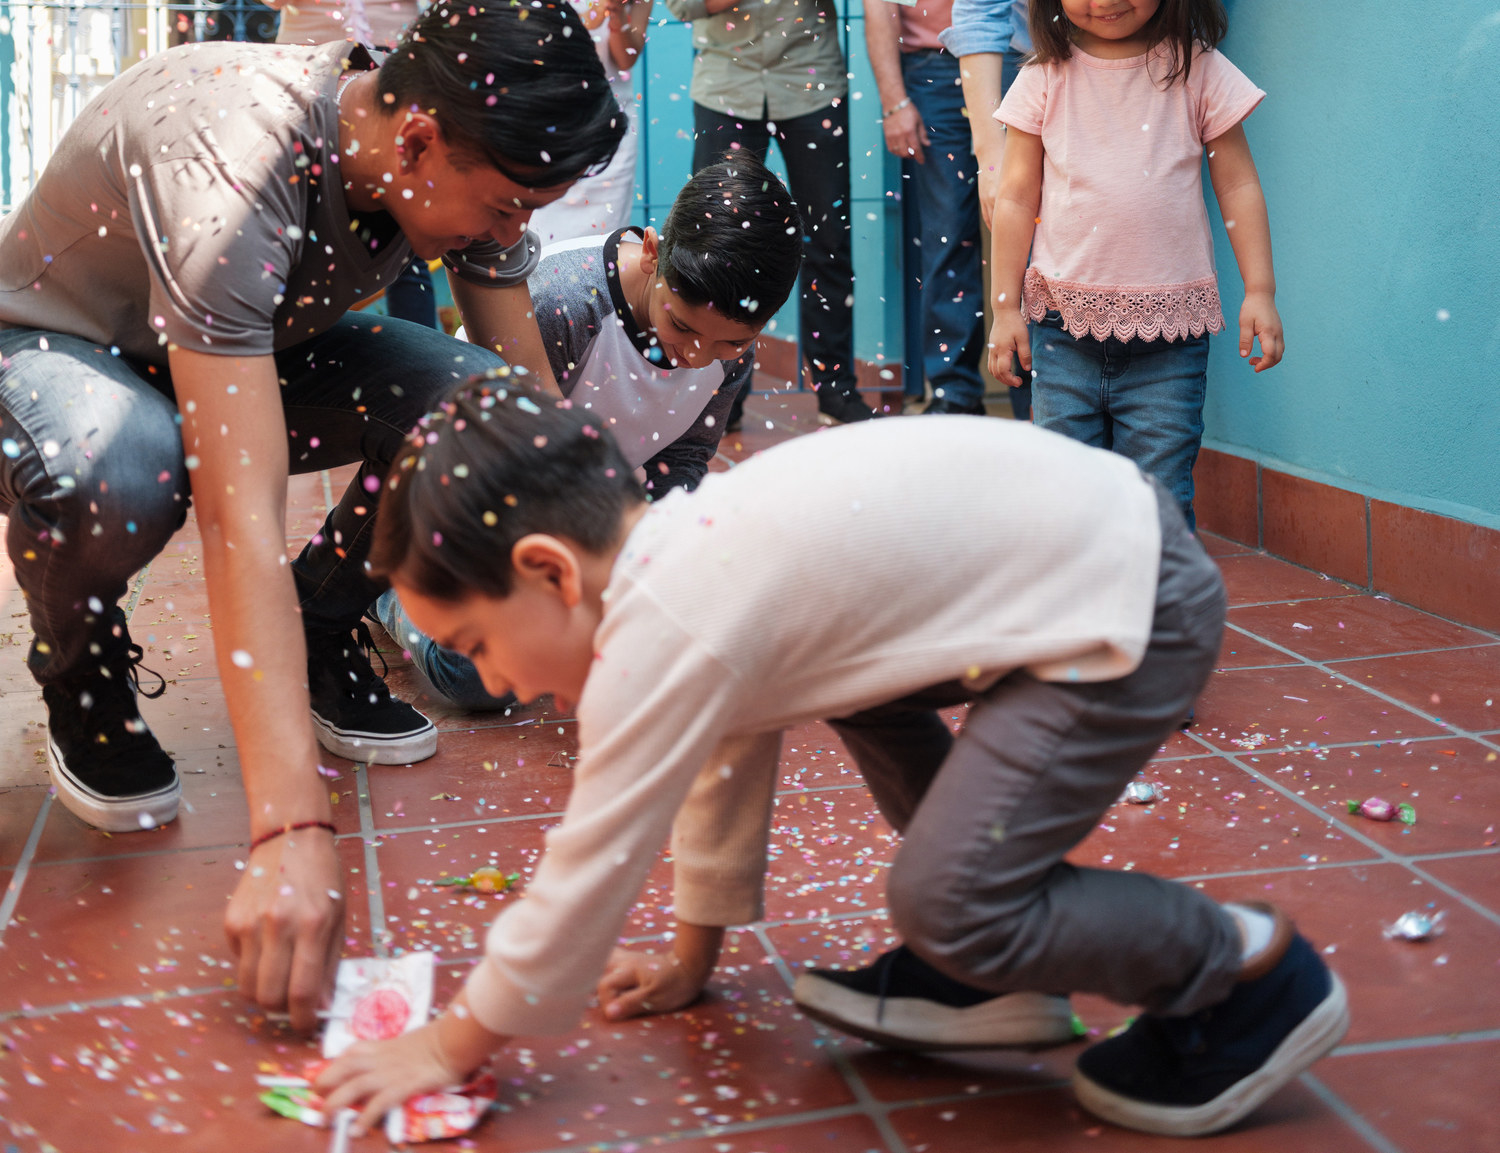 Niños recogiendo dulces de la piñata del piso